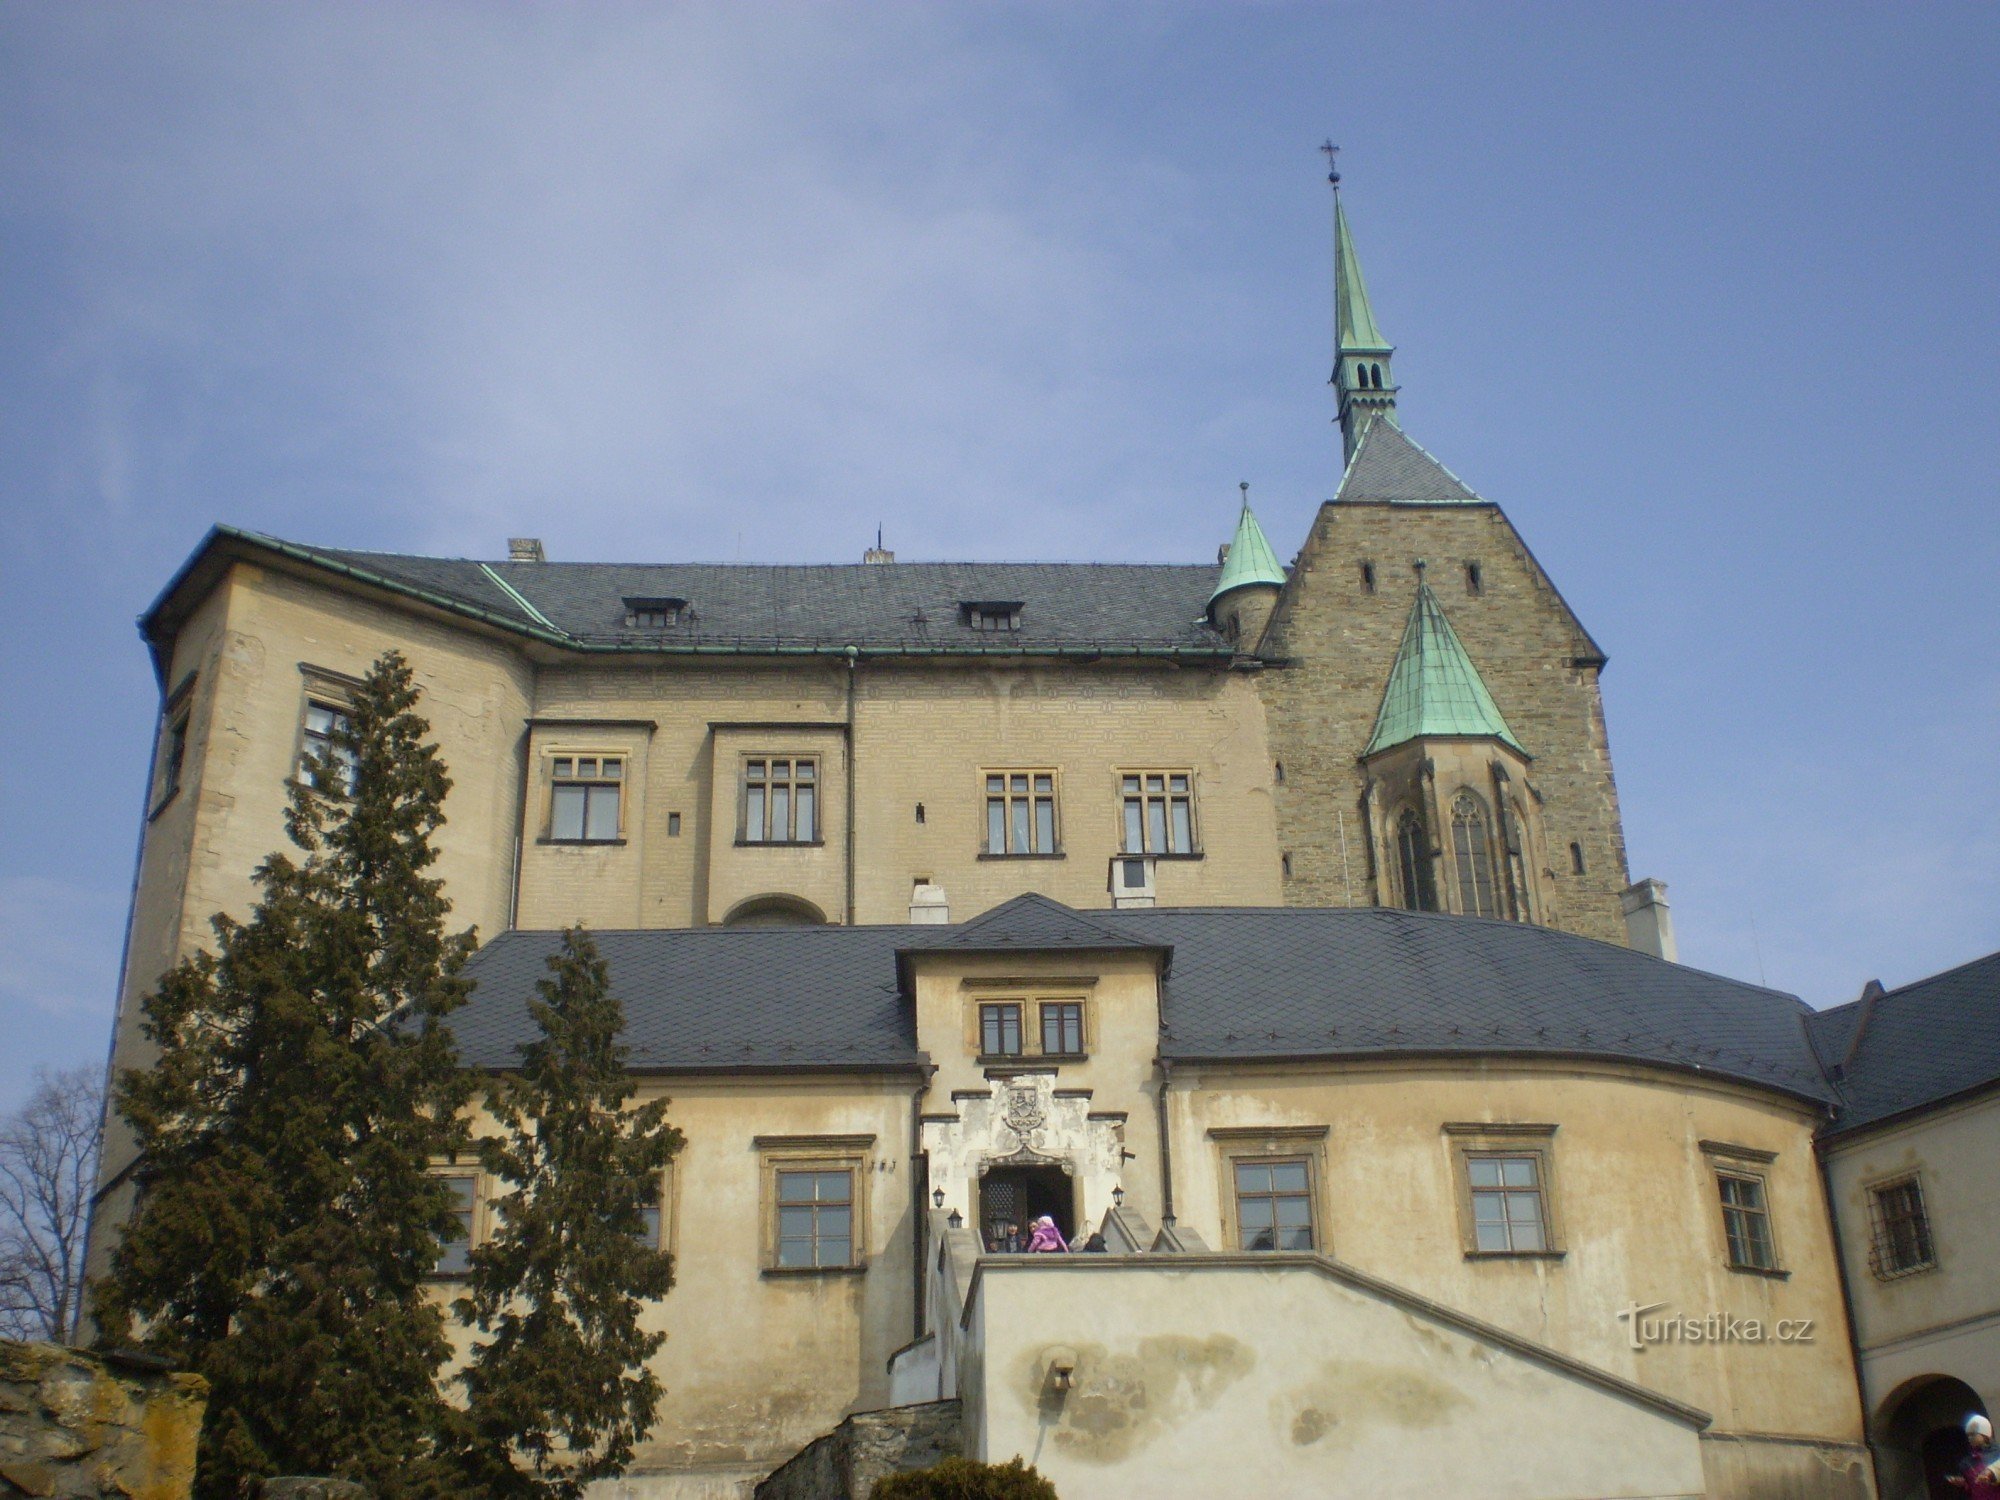 Dvorac Šternberk